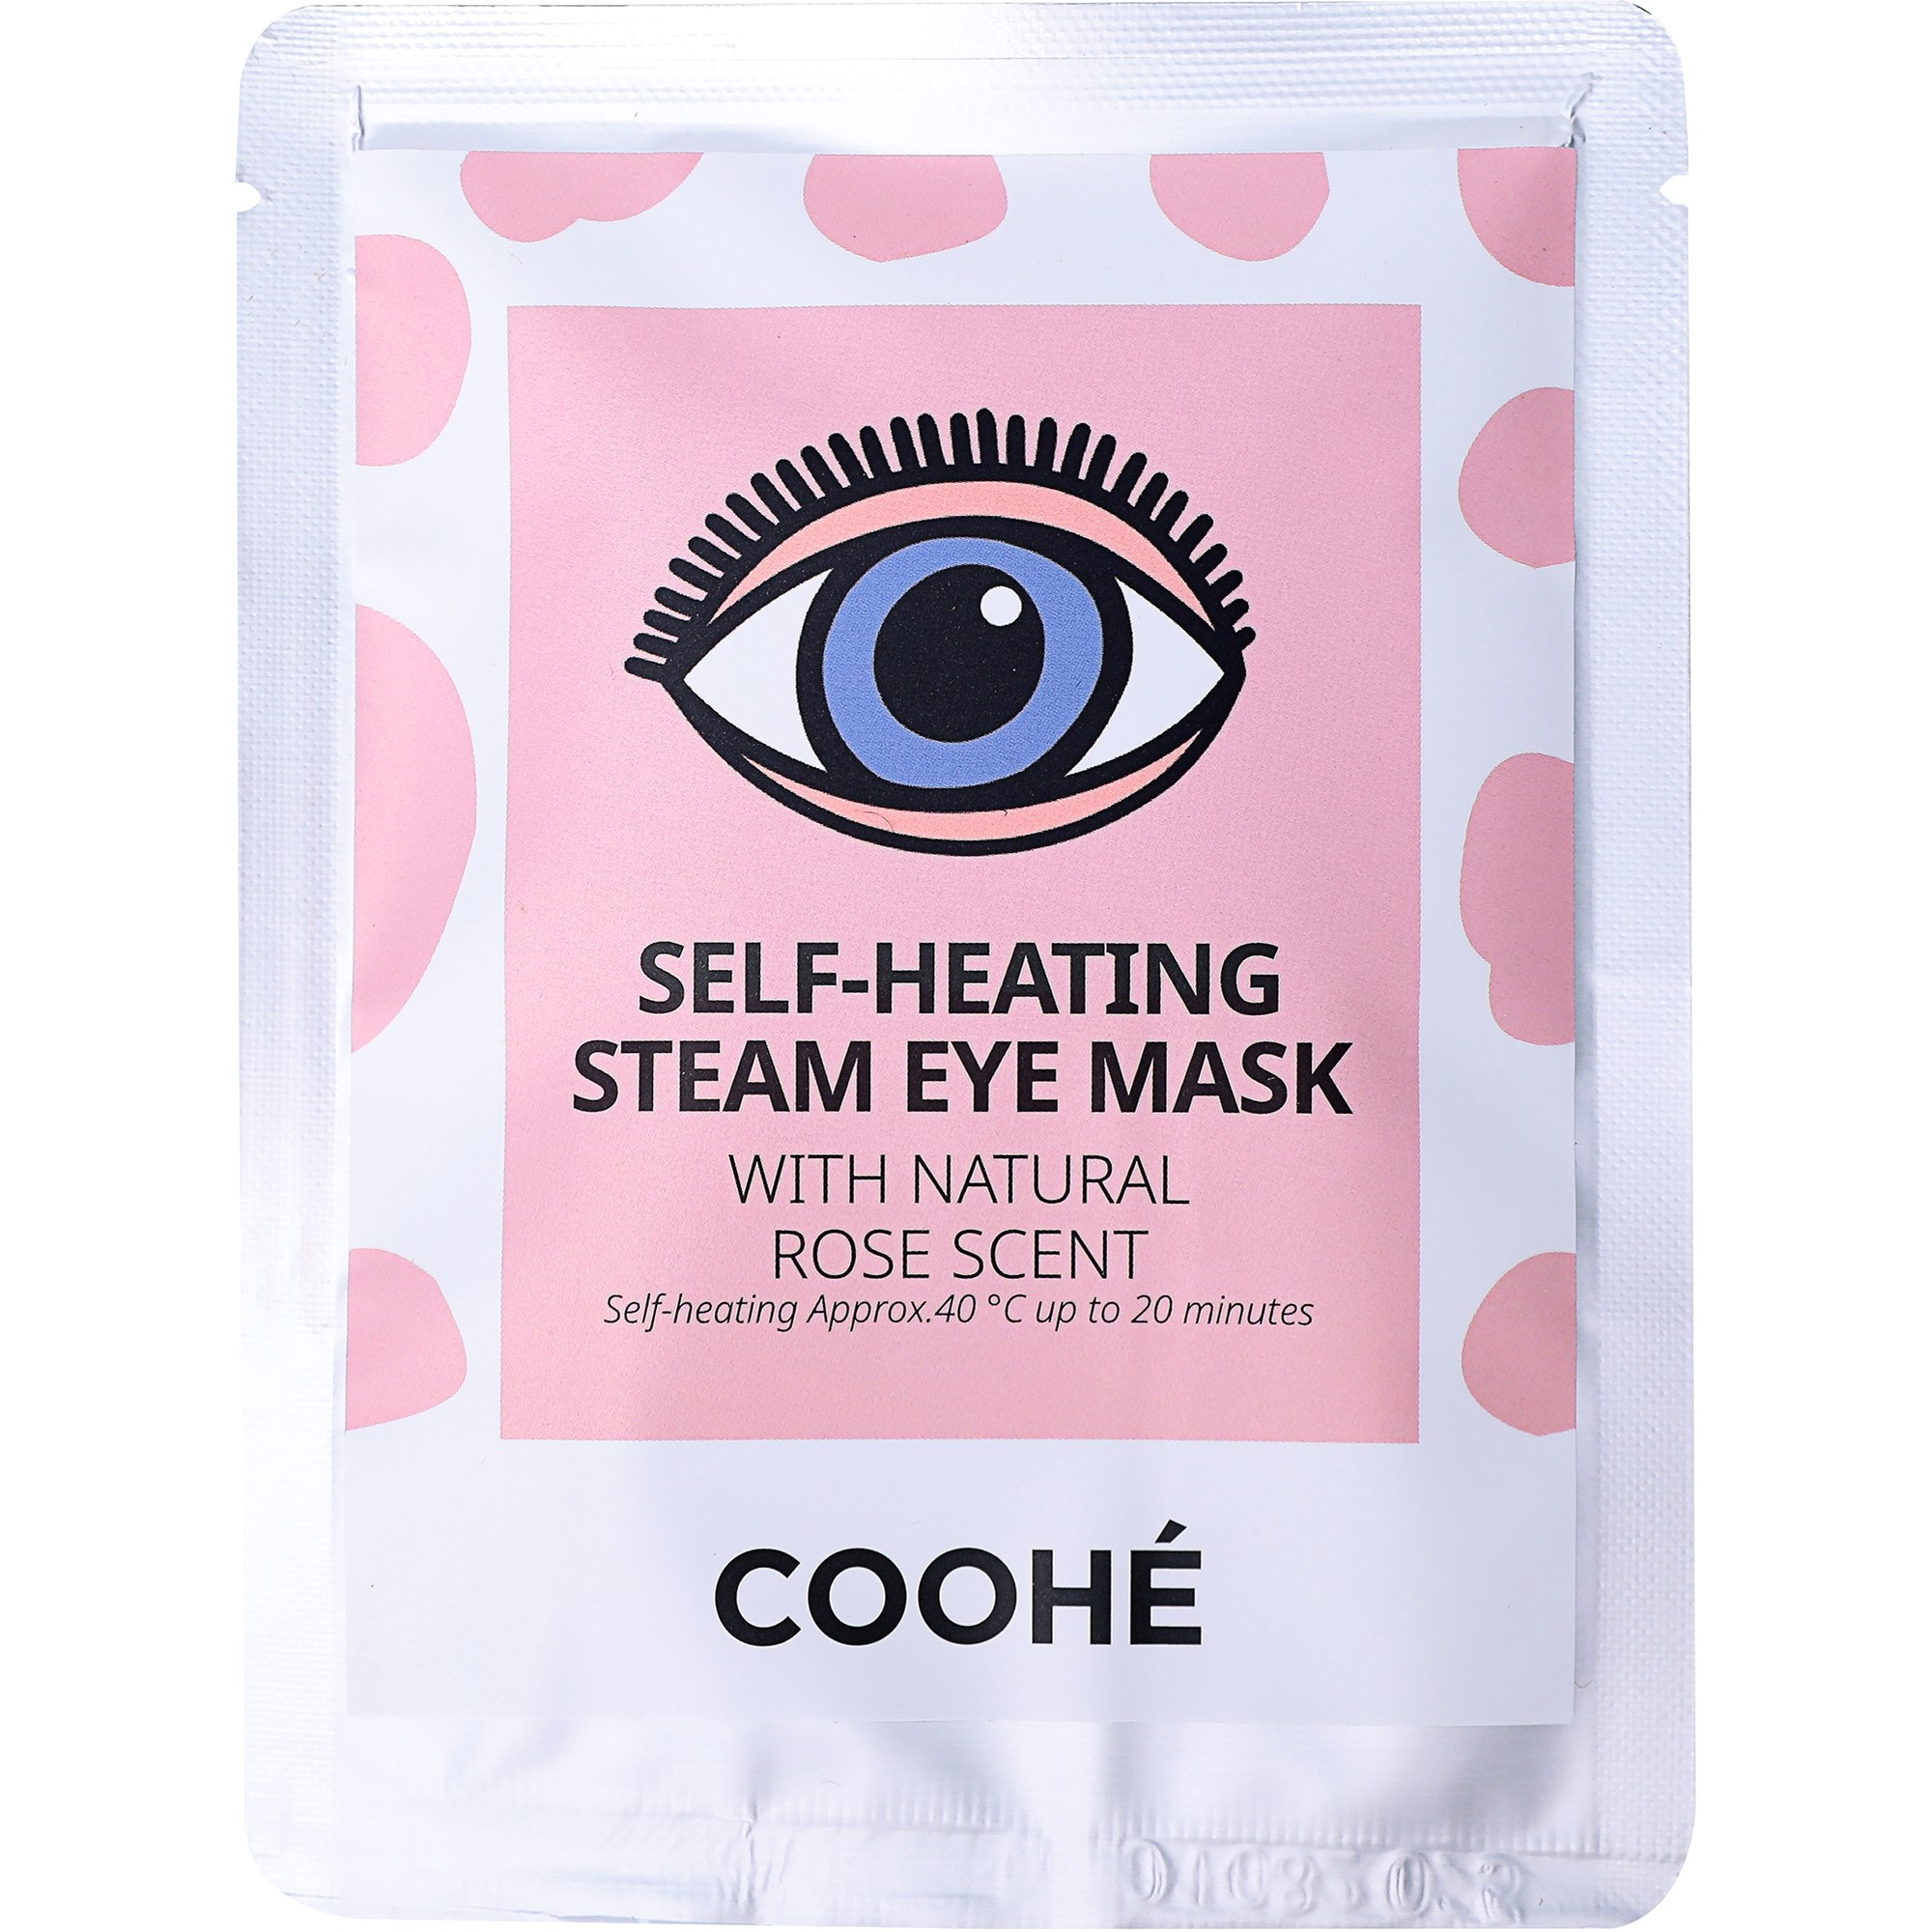 Bilde av Coohé Self-heating Steam Eye Mask